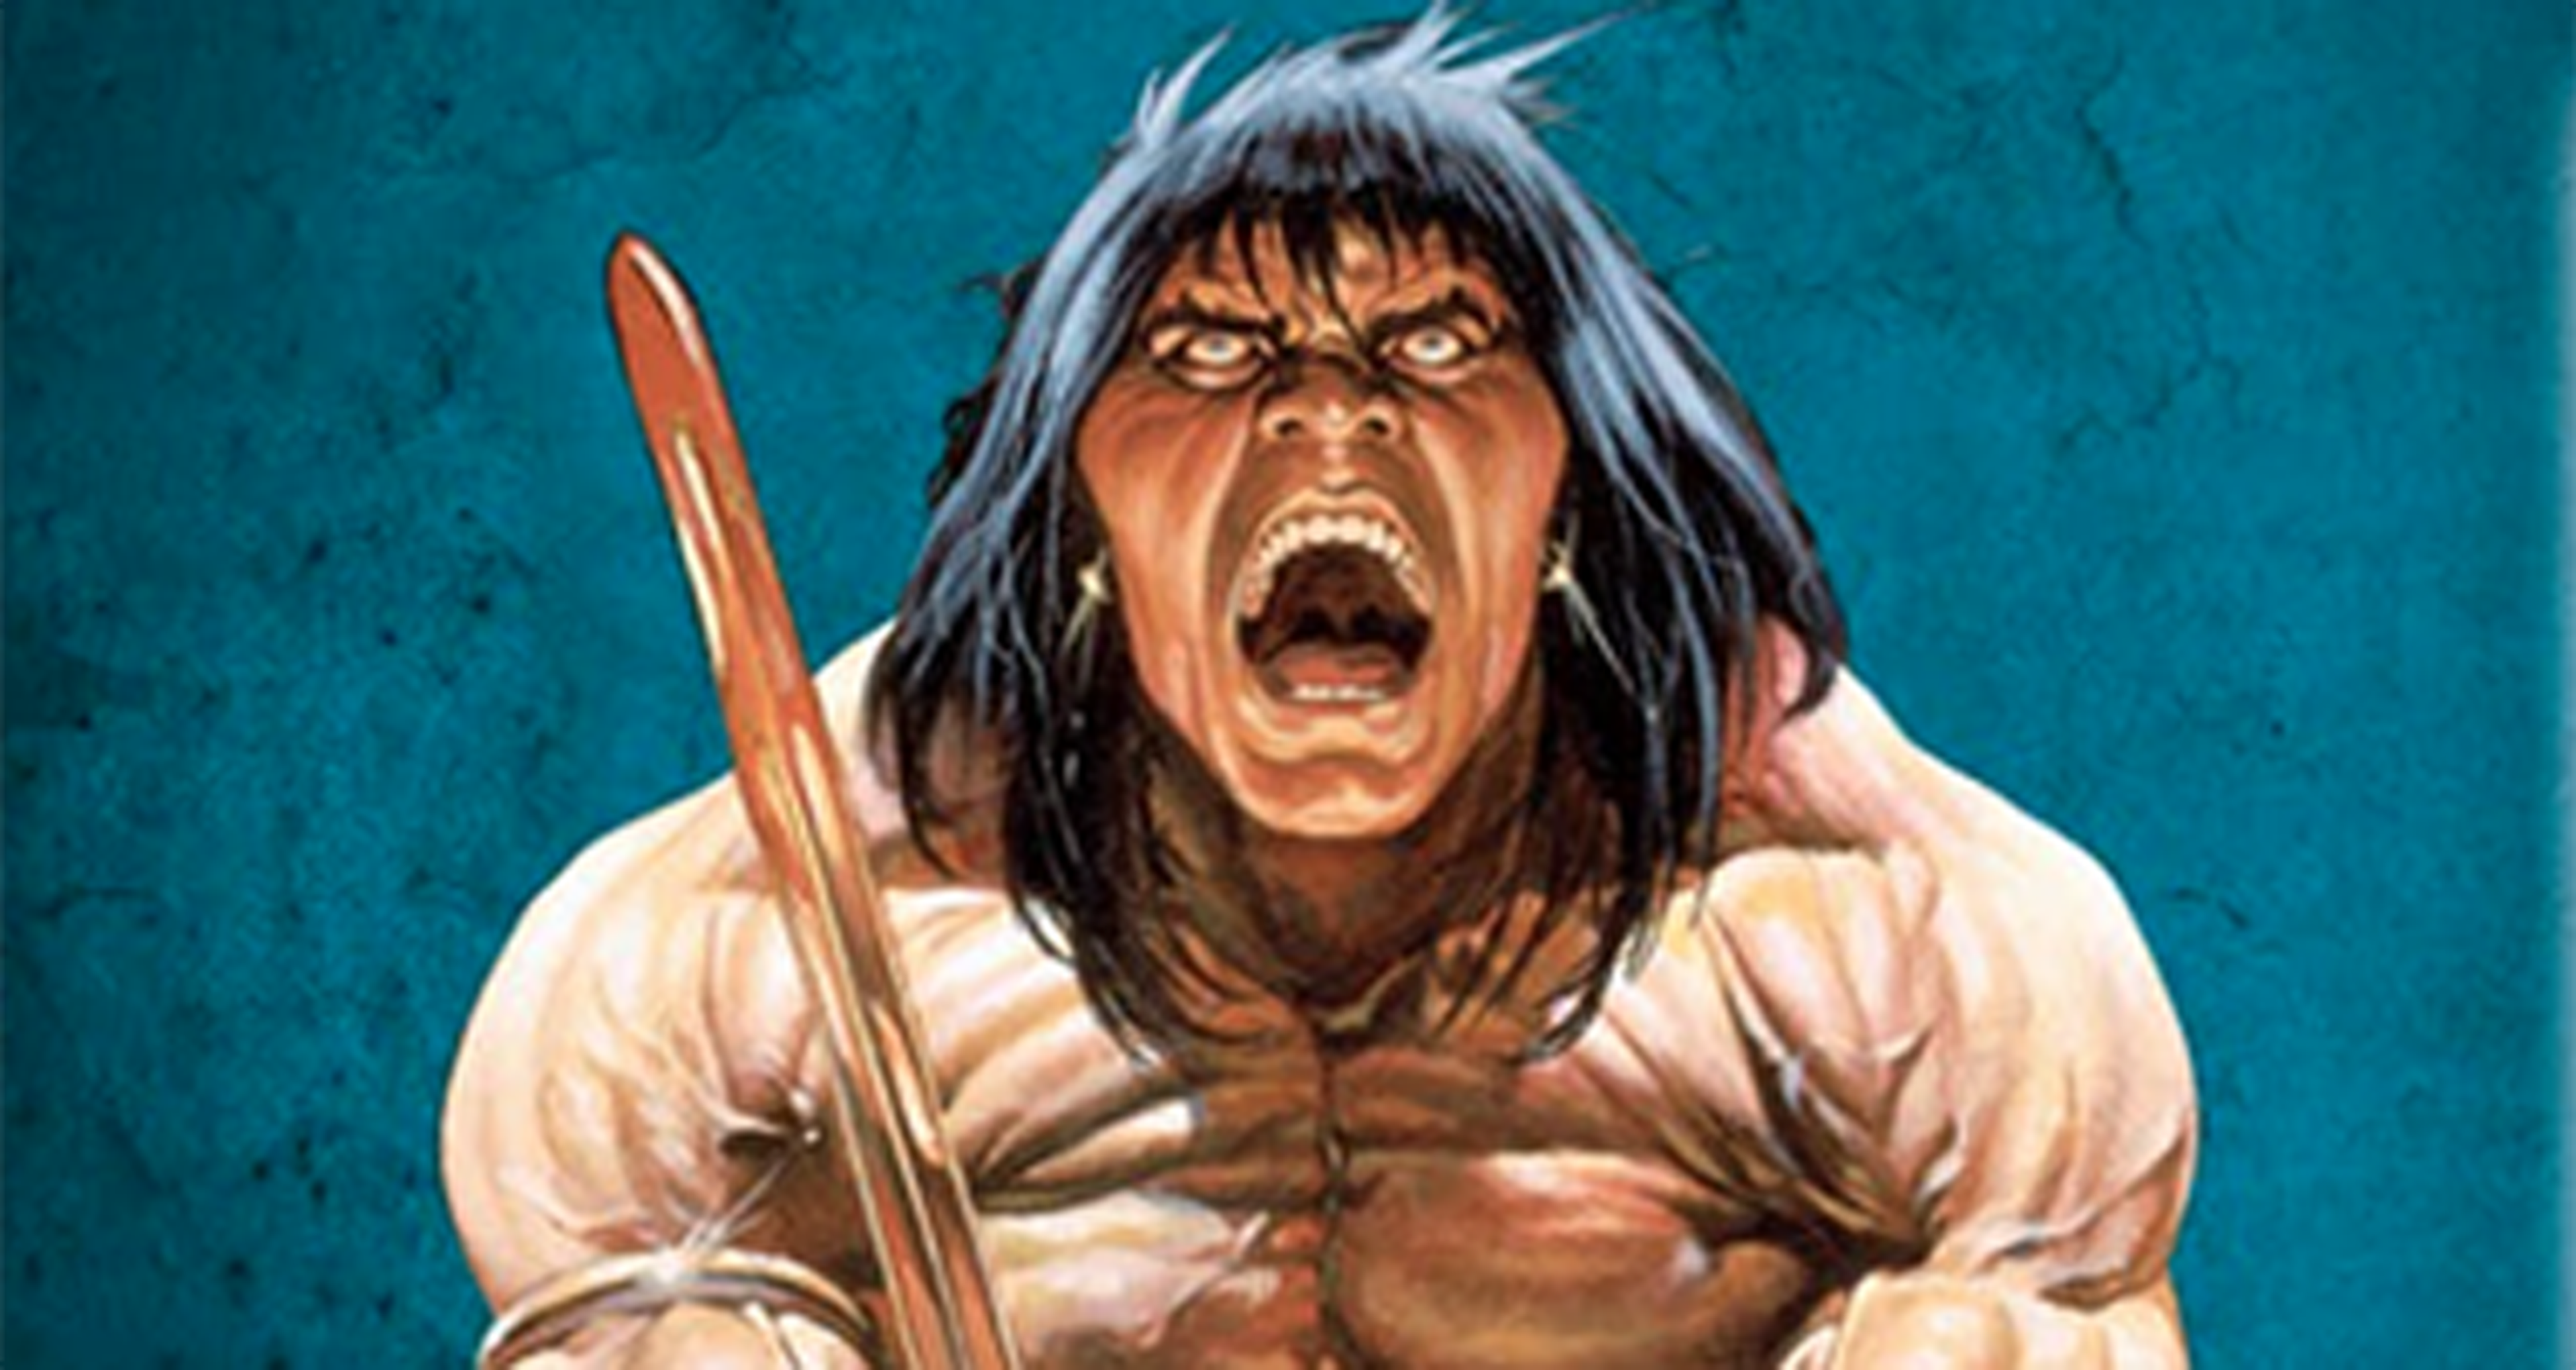 La Espada Salvaje de Conan: Nueva antología recopilatoria